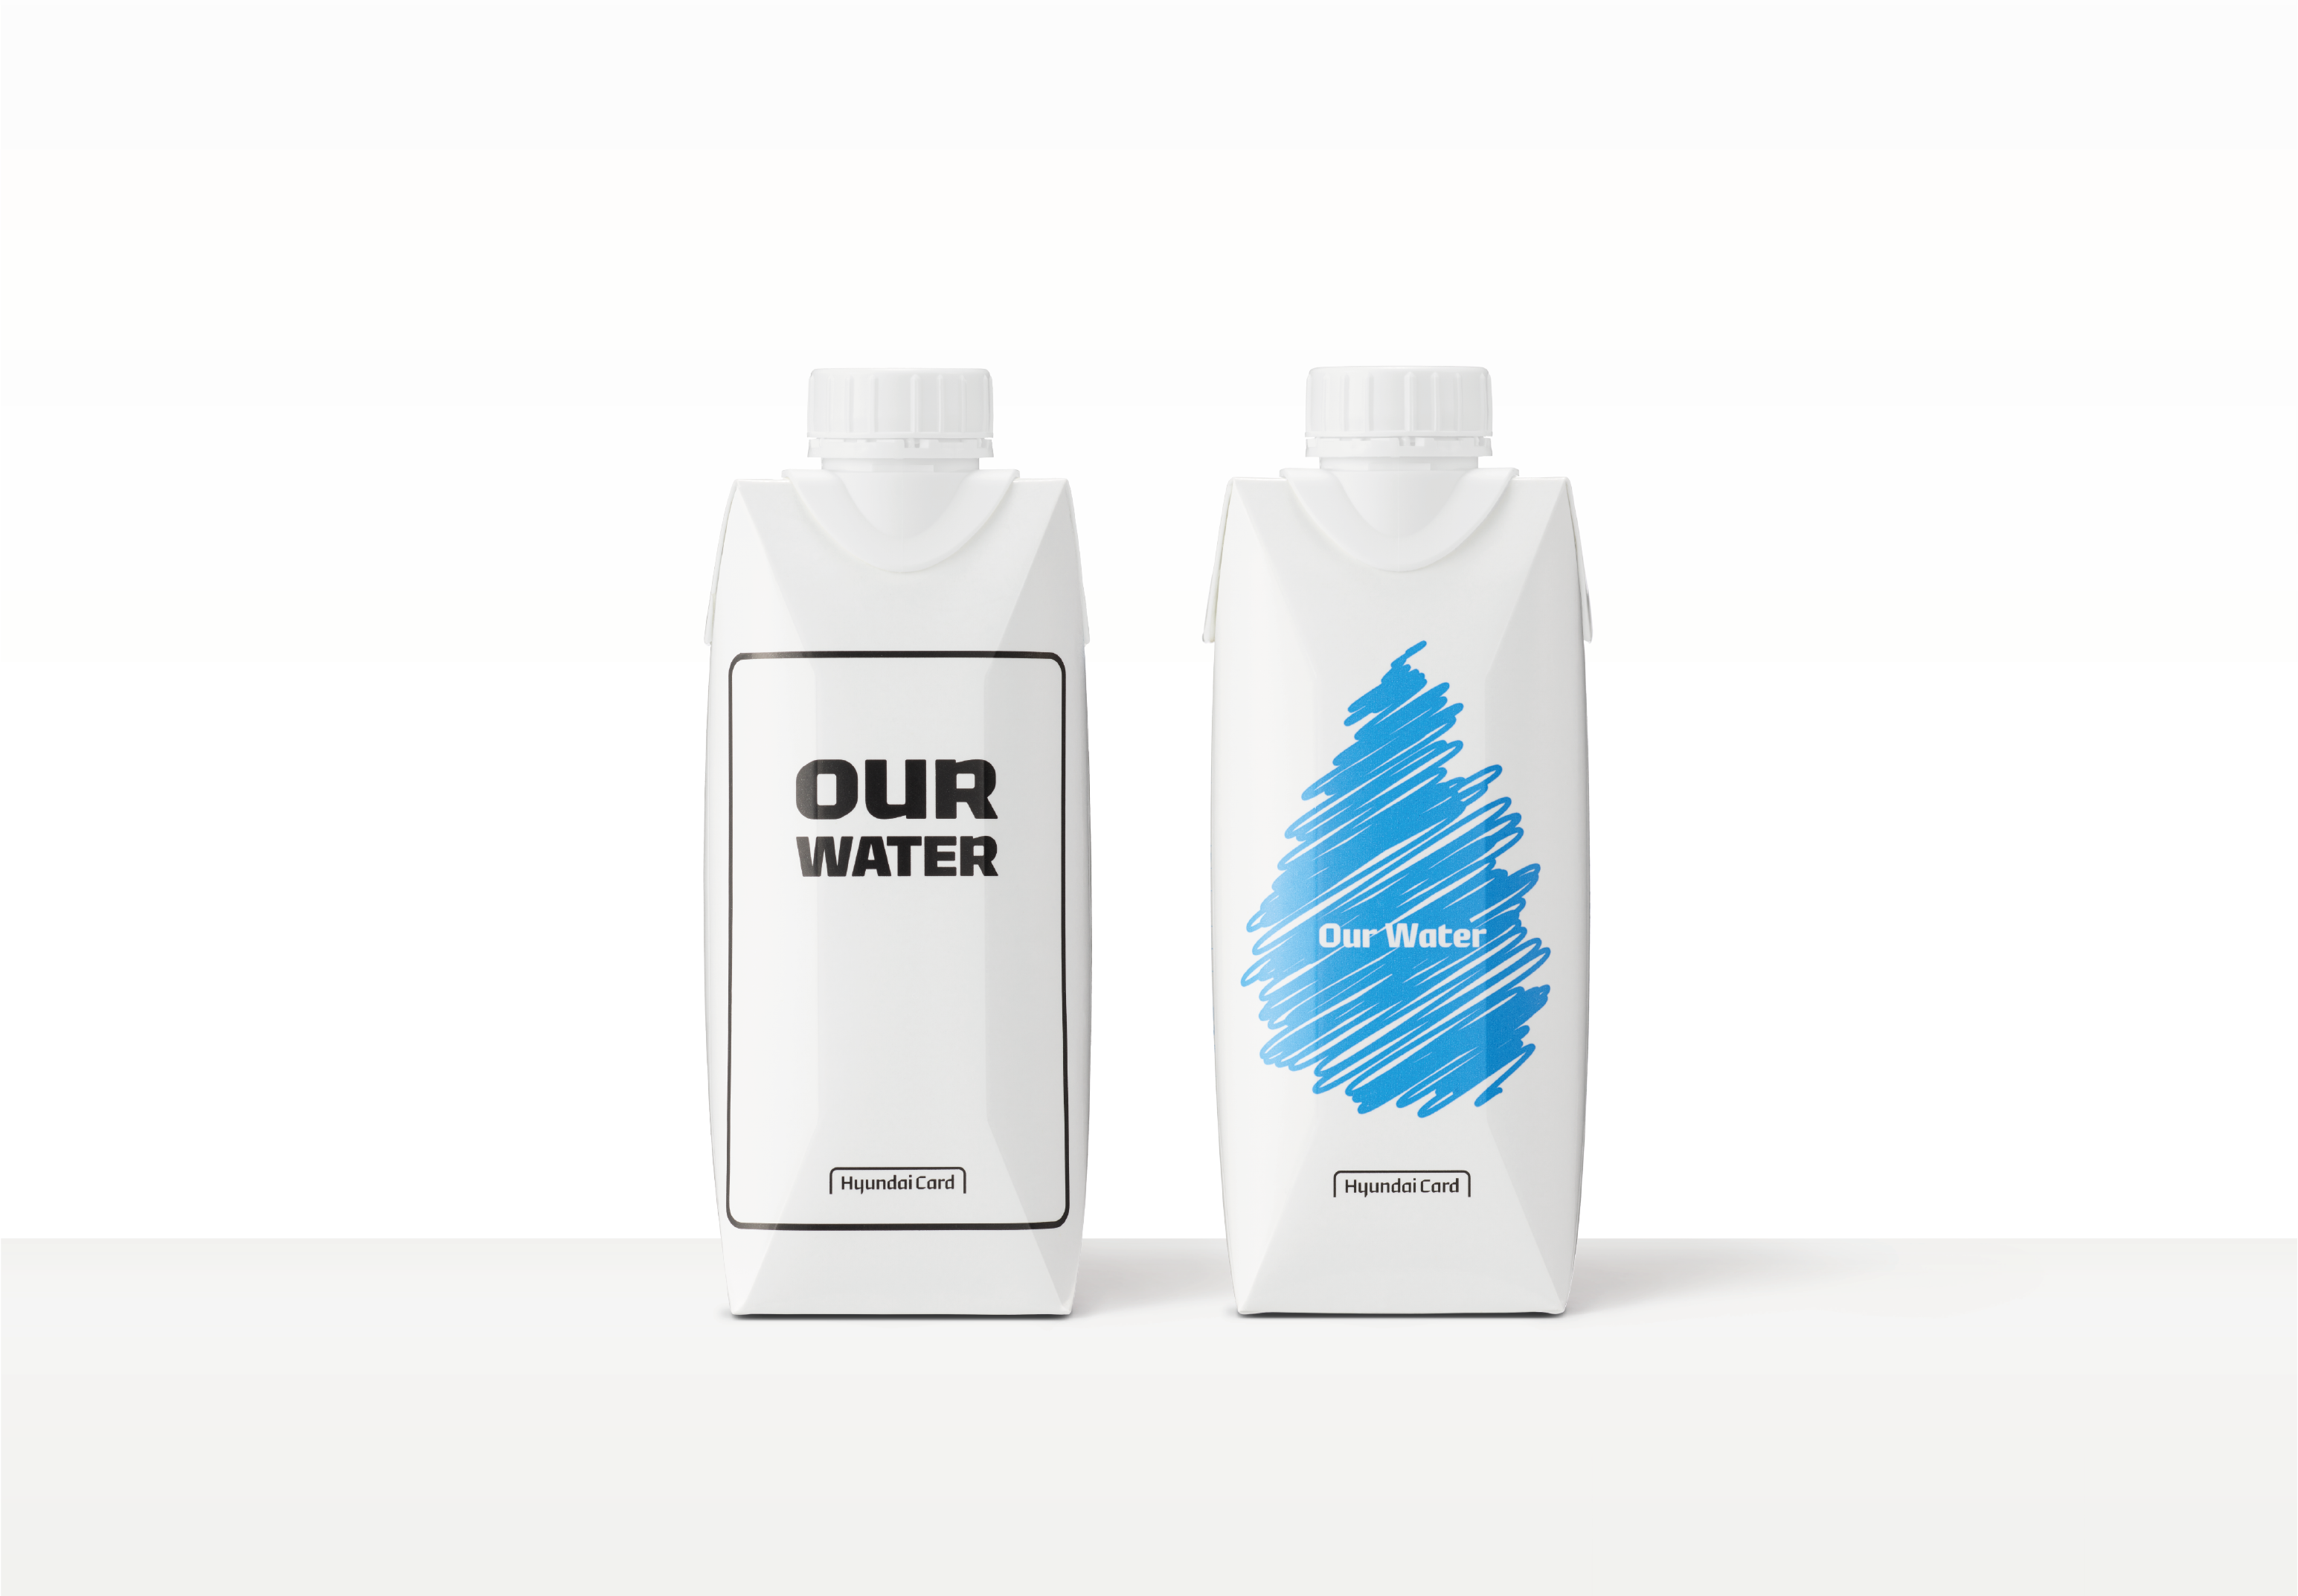 현대카드, 친환경 종이팩 생수 ‘현대카드 Our Water’ 출시